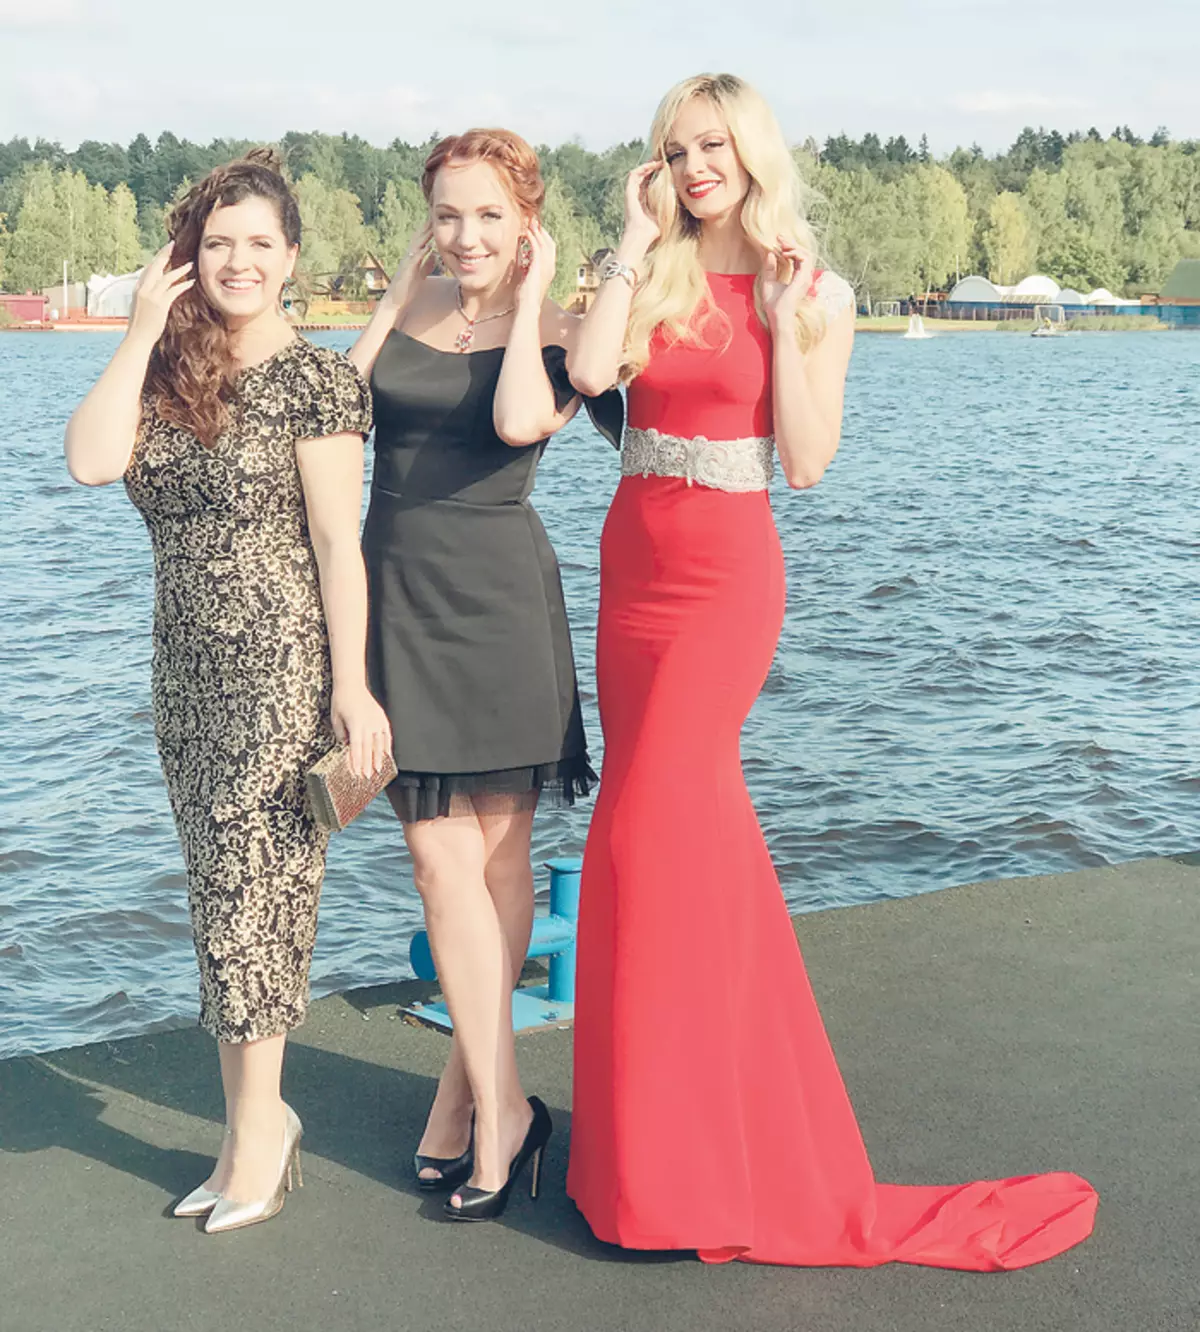 시리즈의 새로운 시즌의 에피소드의 일부는 Saratov에서 촬영되었습니다. Galina Bob, Anastasia Denisova (왼쪽)와 Polina Maksimova (오른쪽) 시리즈의 주요 별은 Volga에서 완벽하게 시간을 보냈습니다.